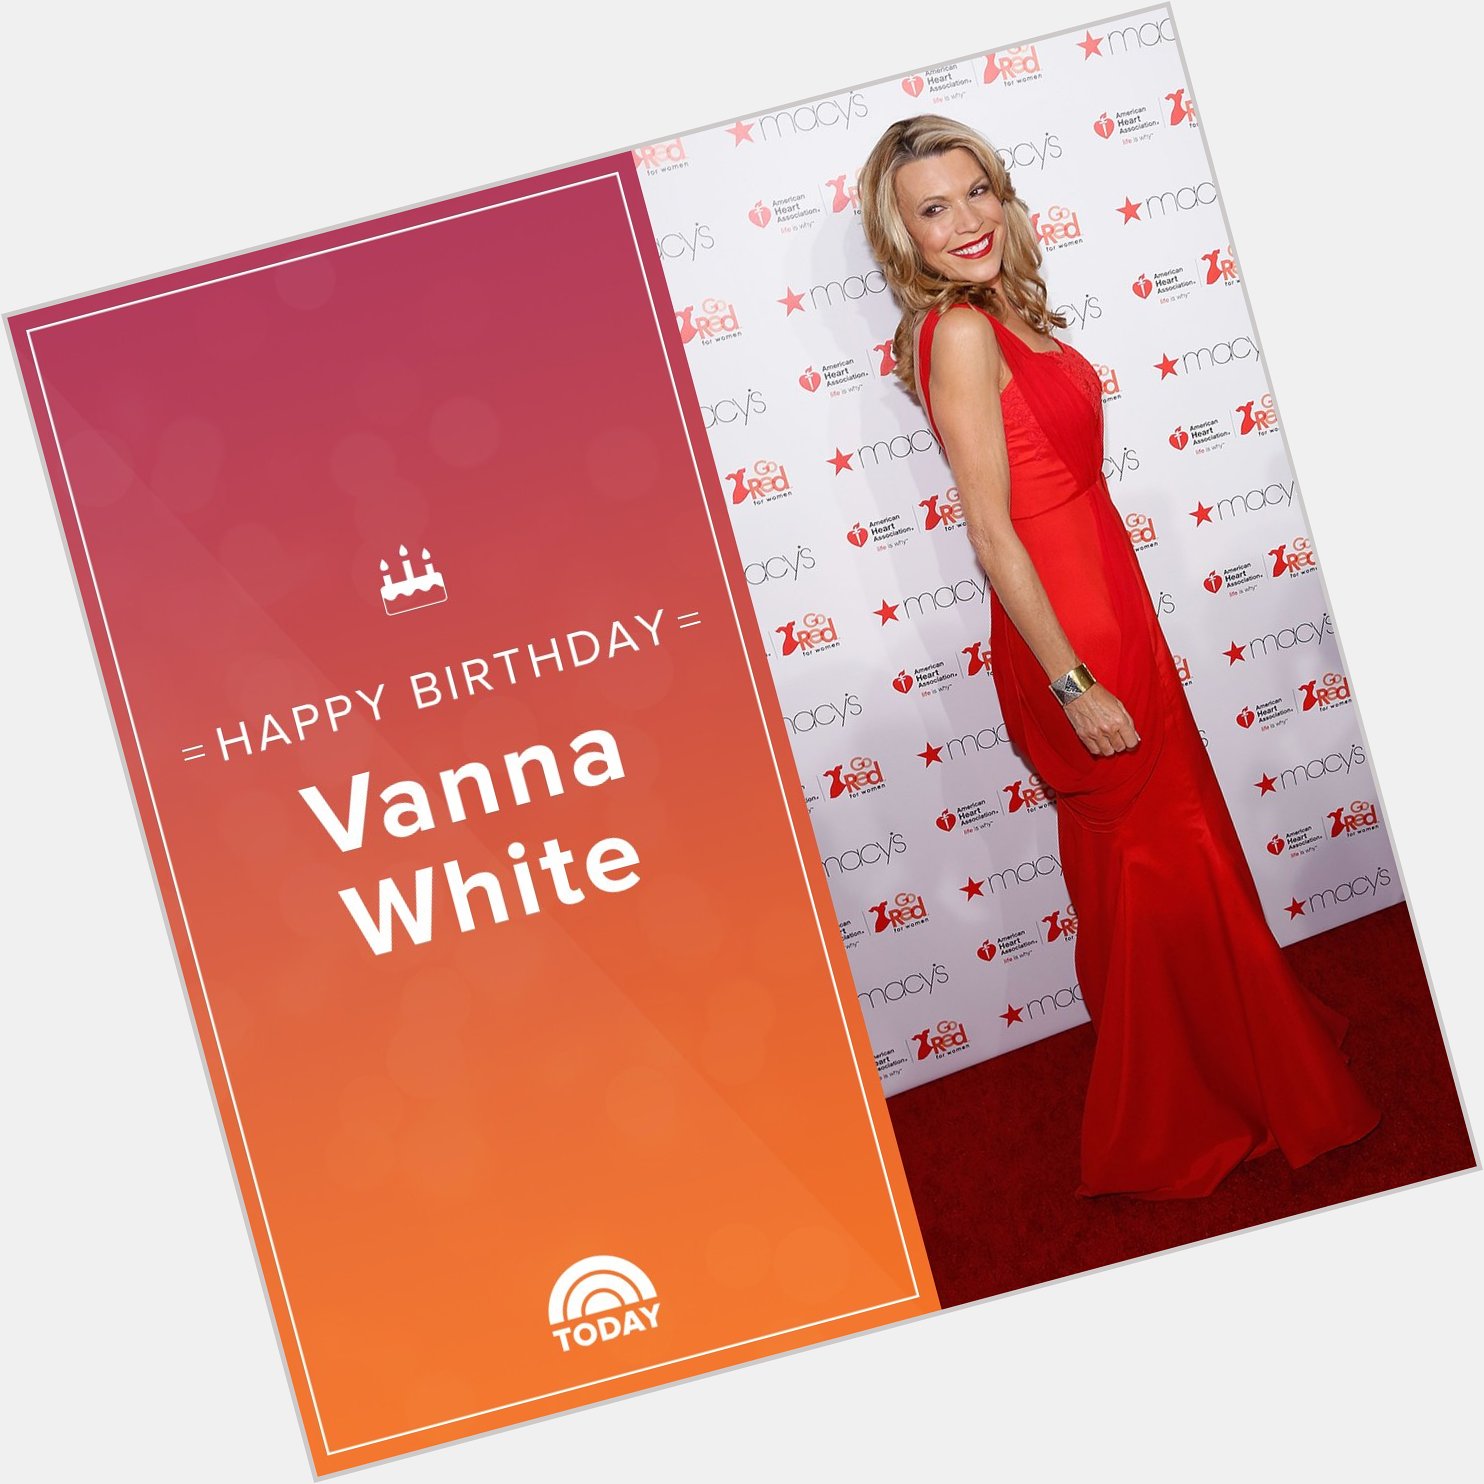 Happy birthday, Vanna White!  